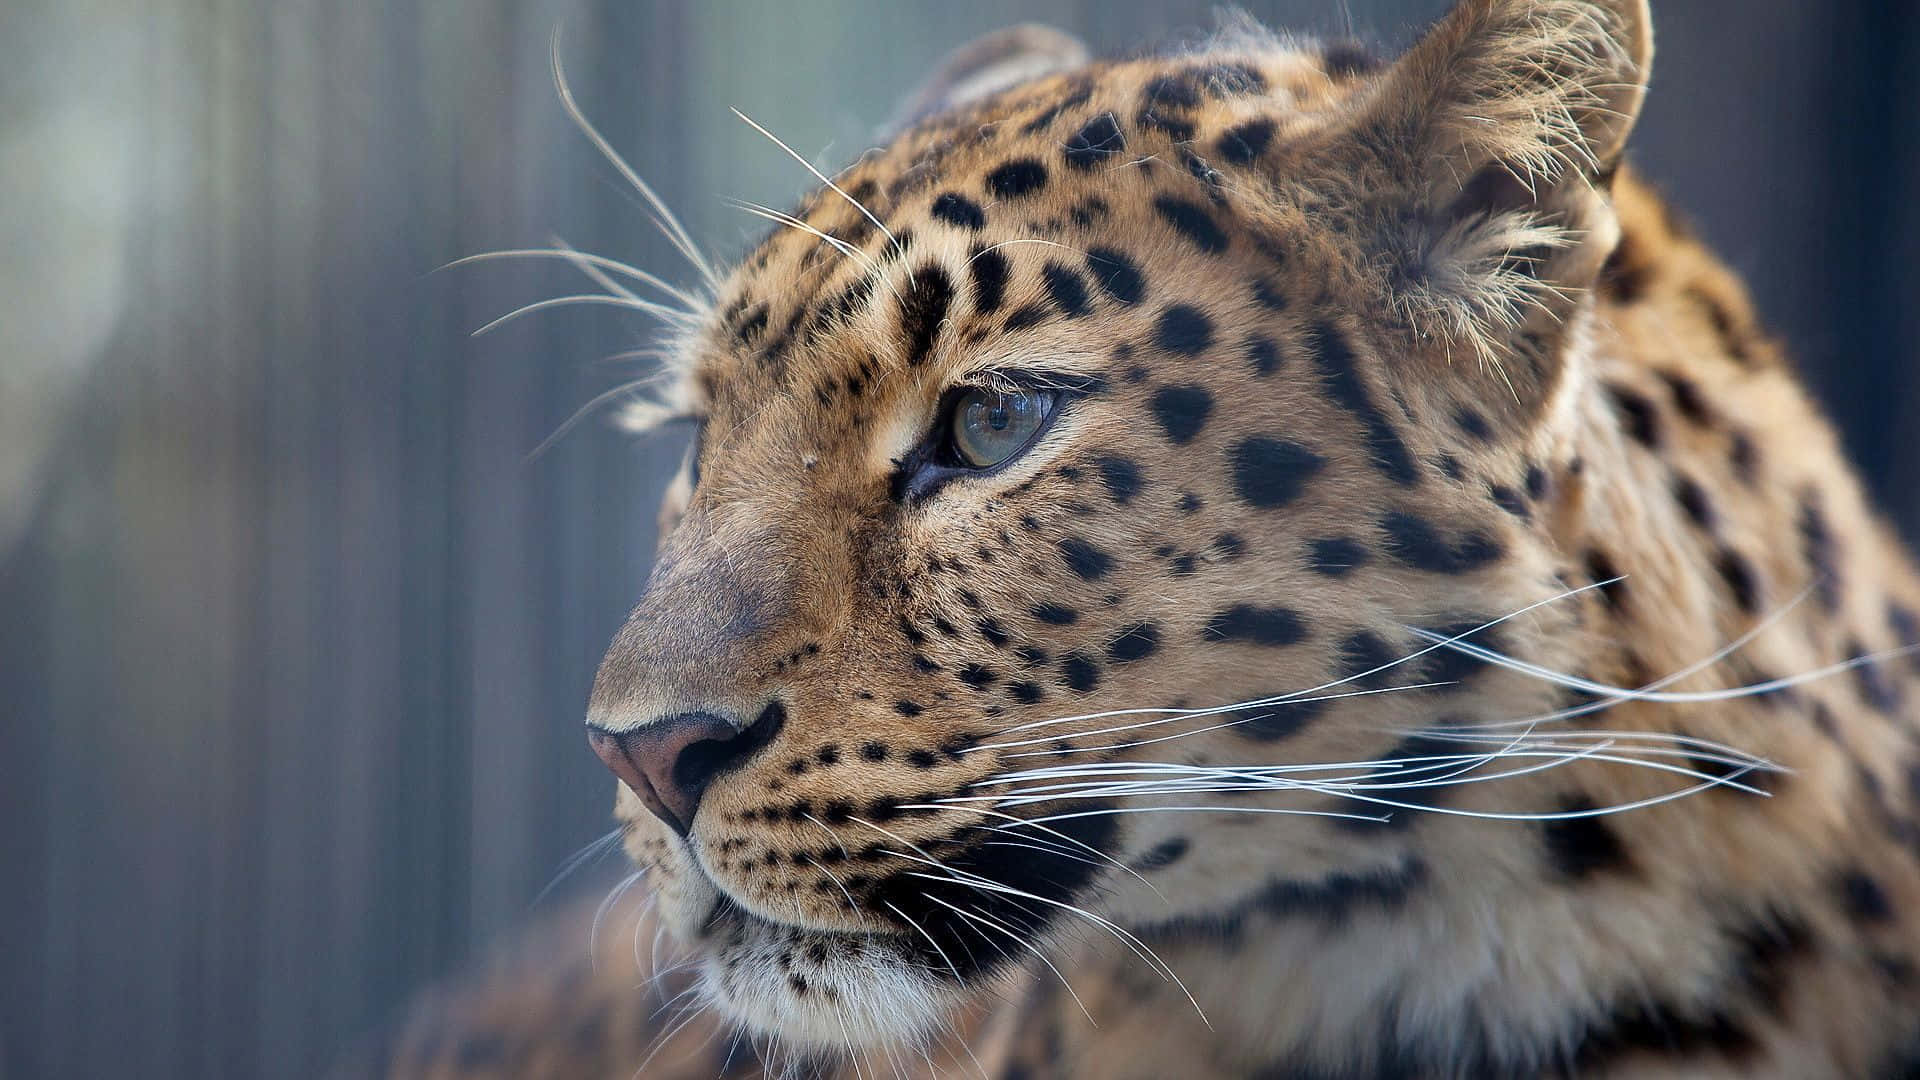 Majestætenaf En Pinkøjet Leopard I Dens Naturlige Omgivelser.